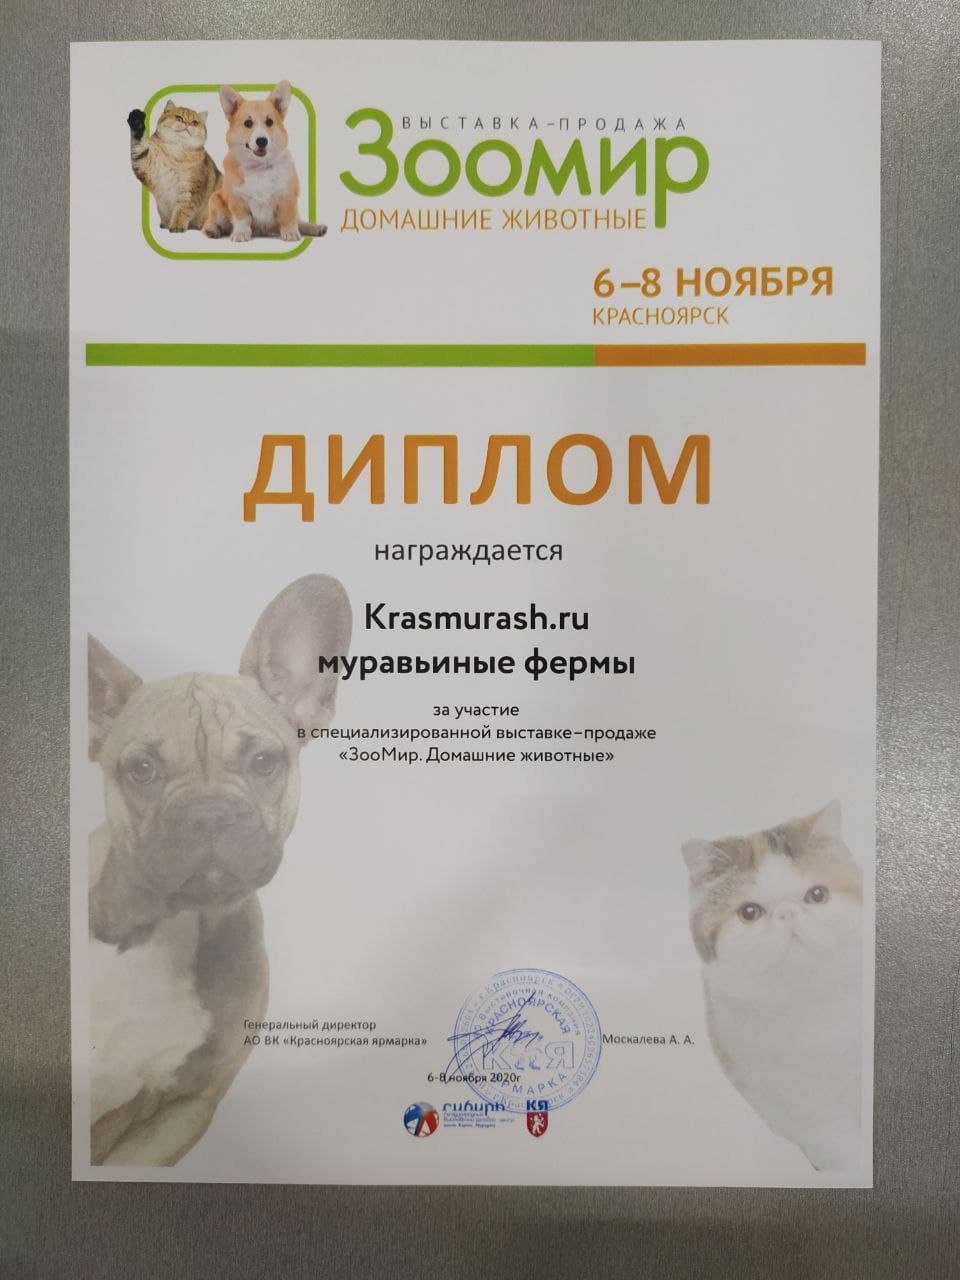 Выставка-ярмарка домашних животных "ЗооМир 2020"